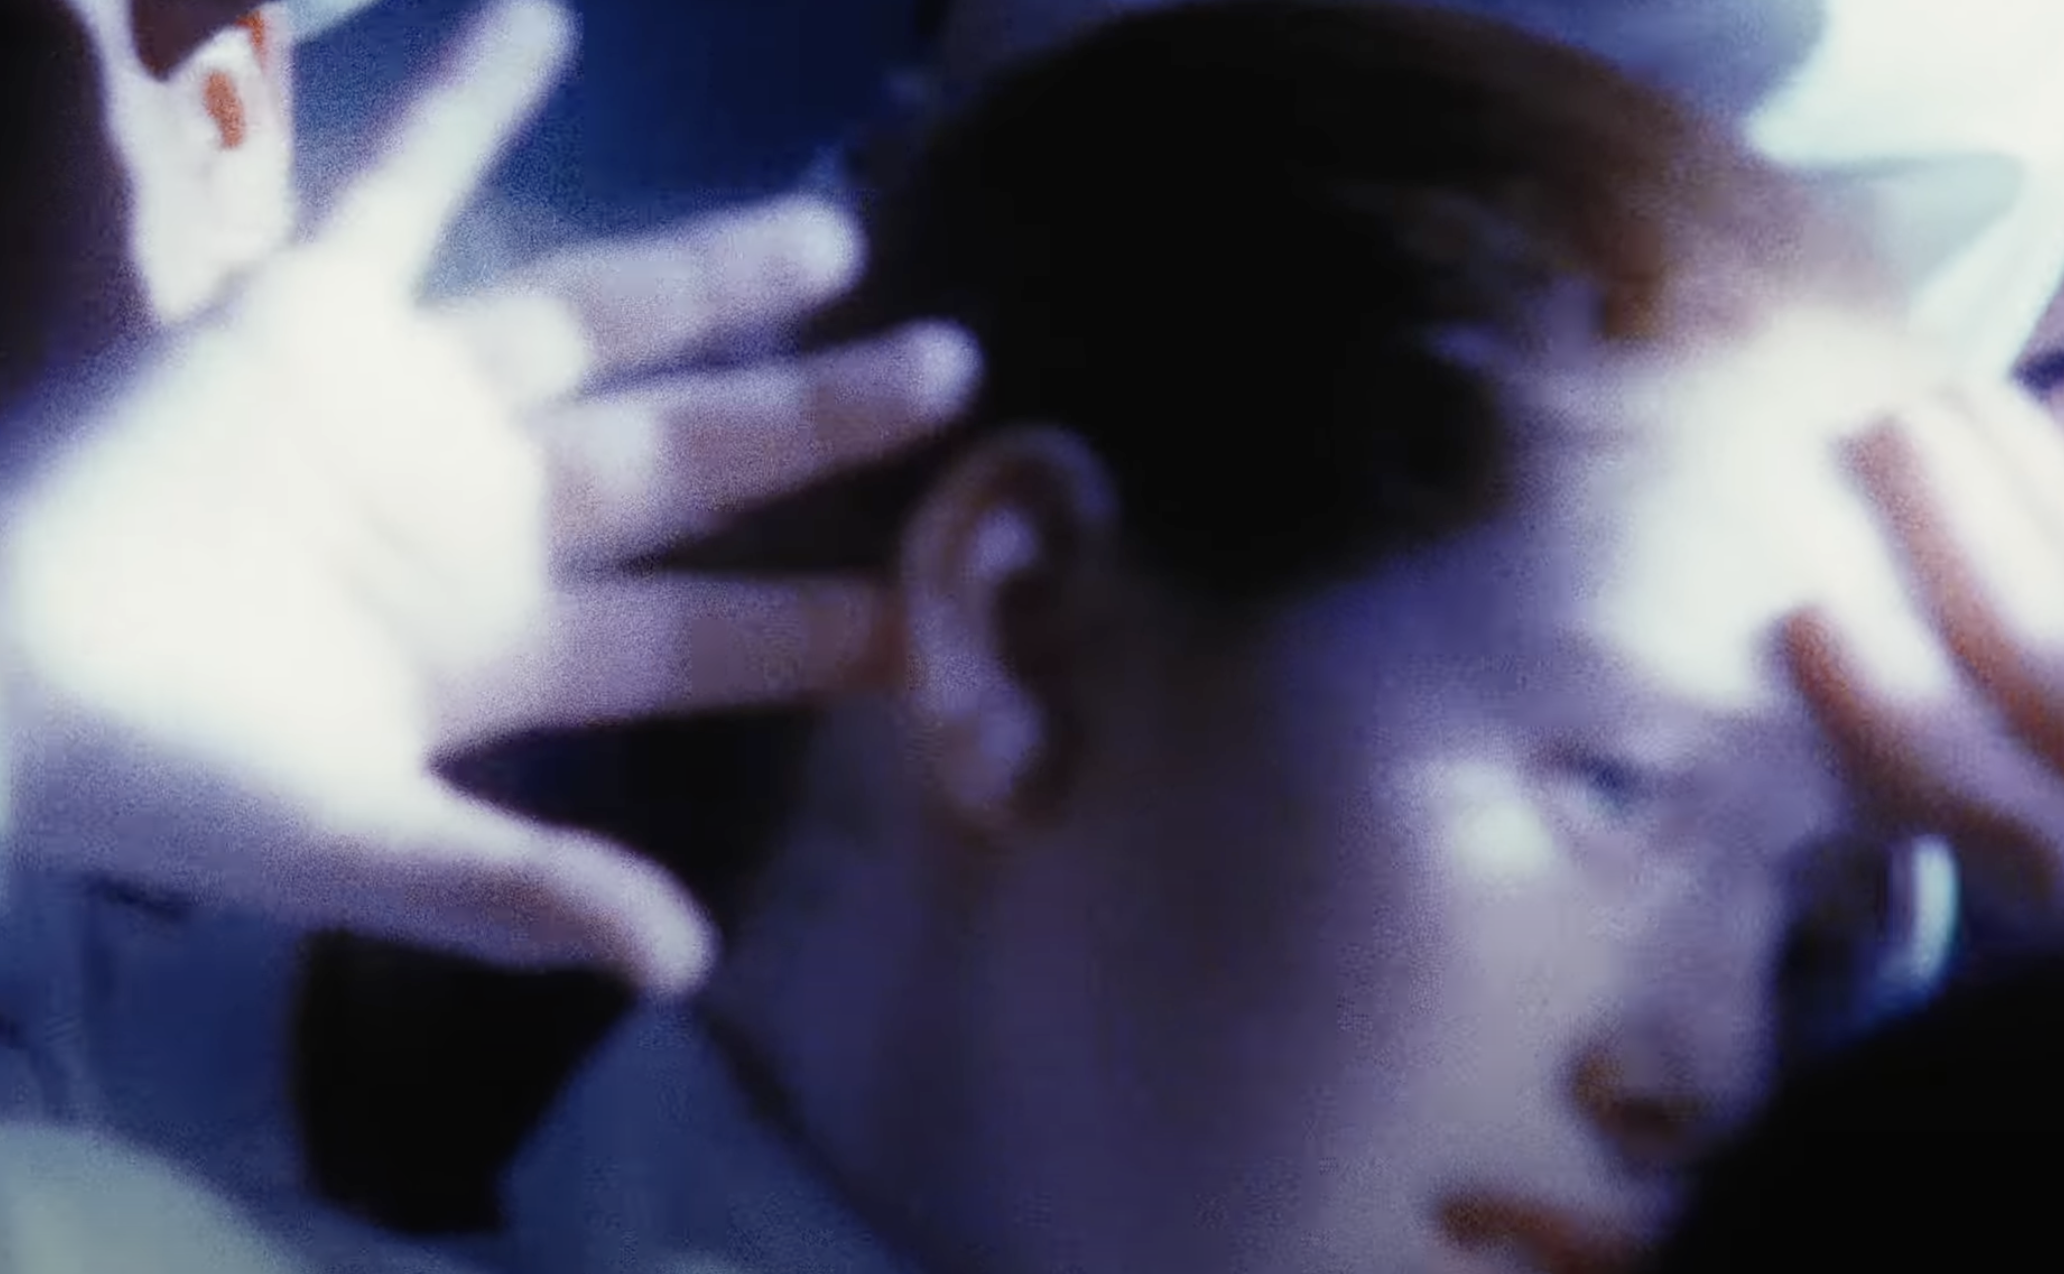 Fotograma del vídeoclip 'Jeremy', de Pearl Jam, objeto de una confusión violenta y fatal.